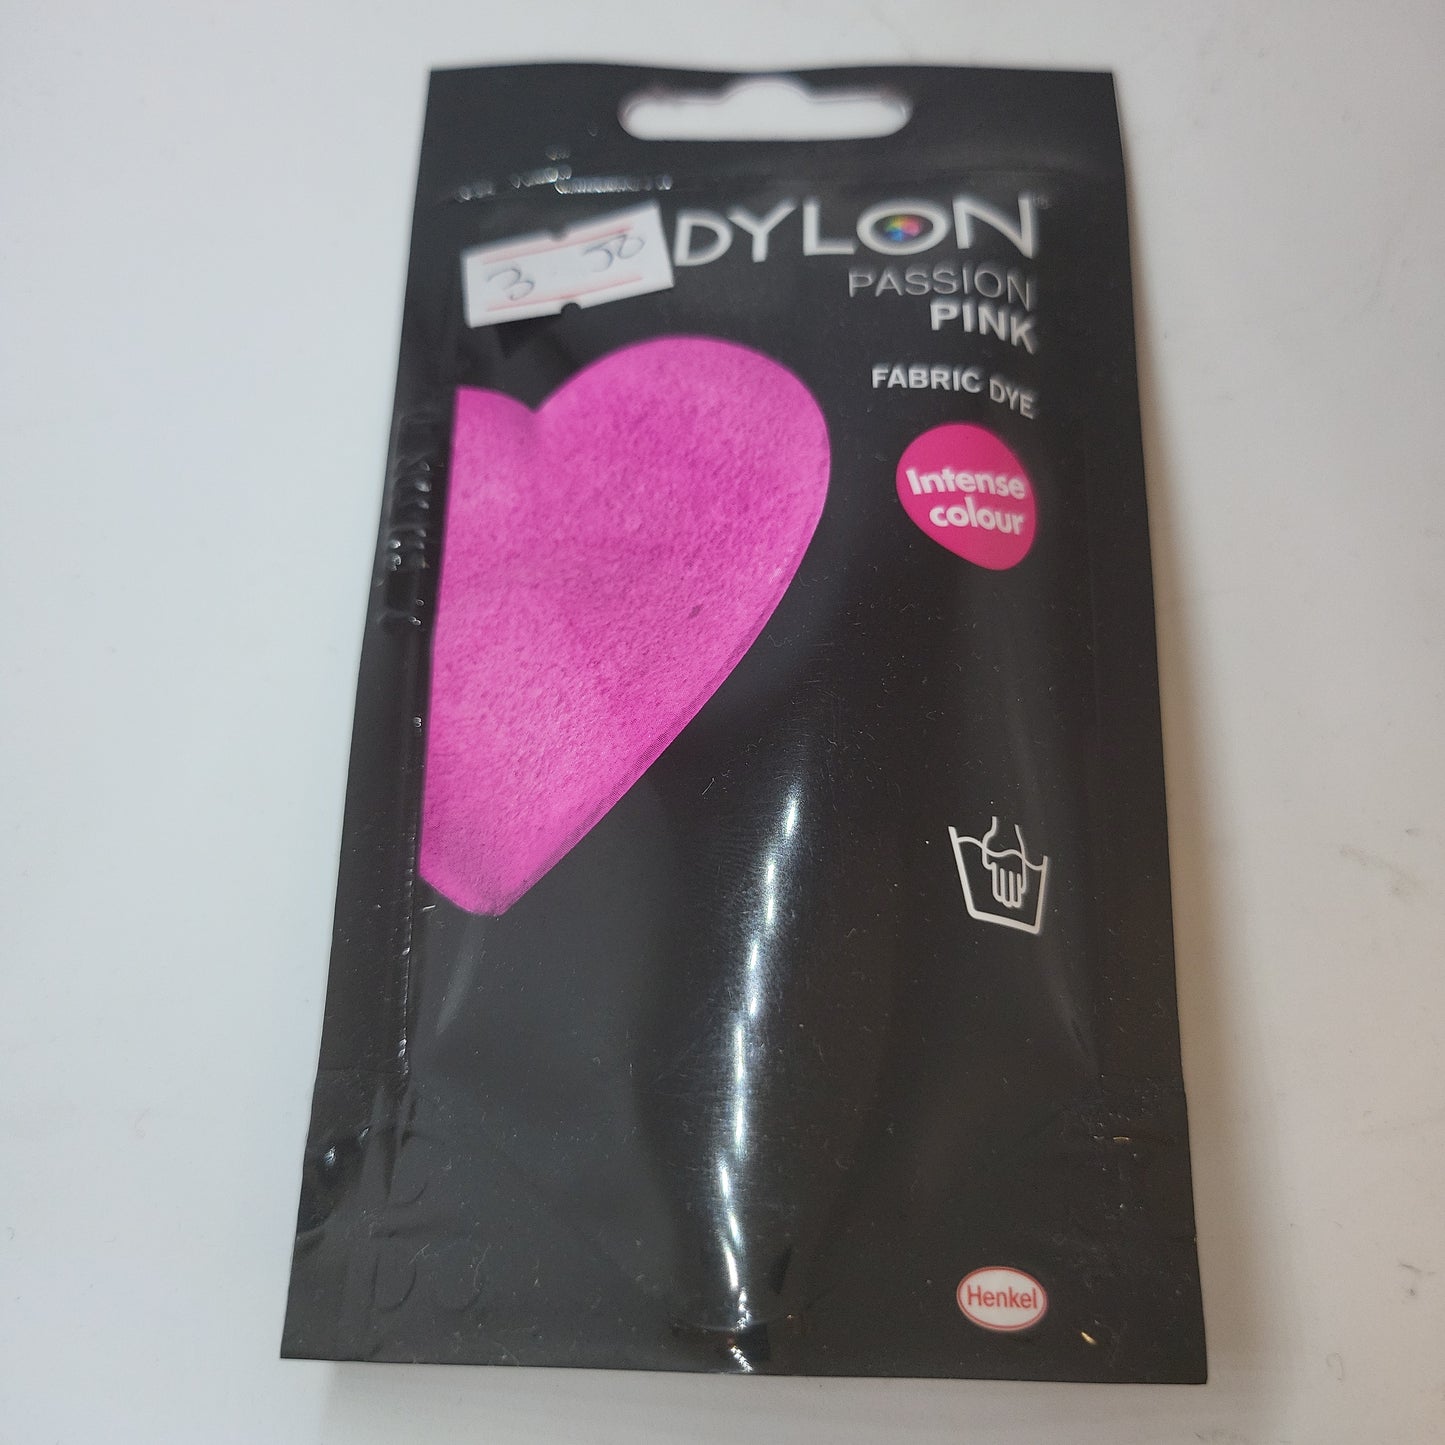 Dylon Fabric Dye: Hand Dye Sachet: 29 Passion Pink